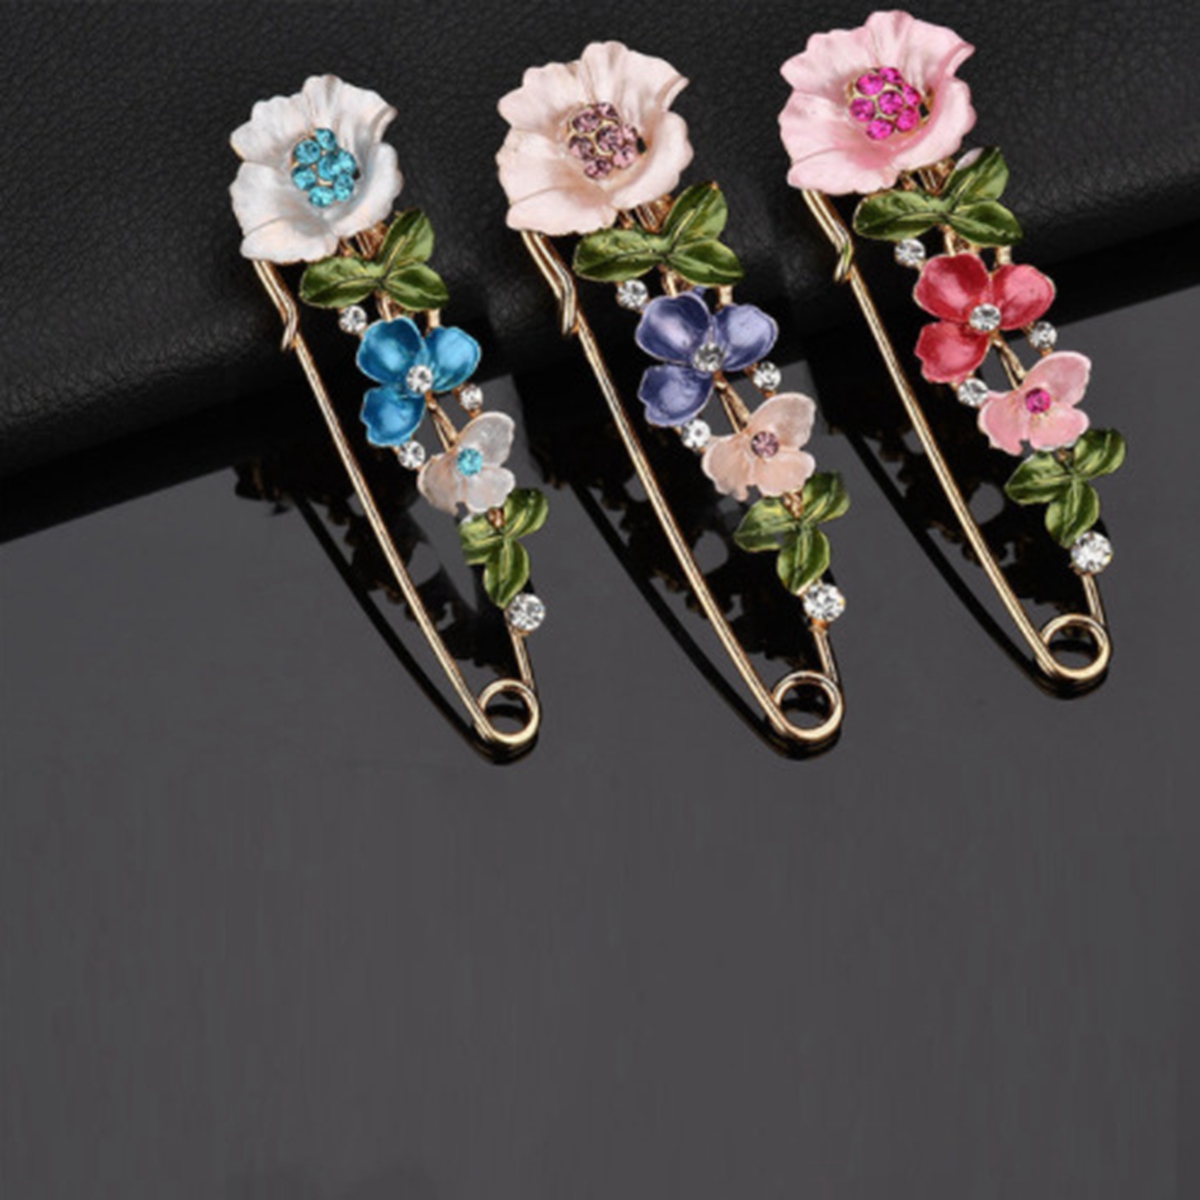 9pcs Spettame di smalto di fiori vintage Elegante Pin Gioielli Rhinestone Women Cardigan Sciarf Dress Accessori Accessori